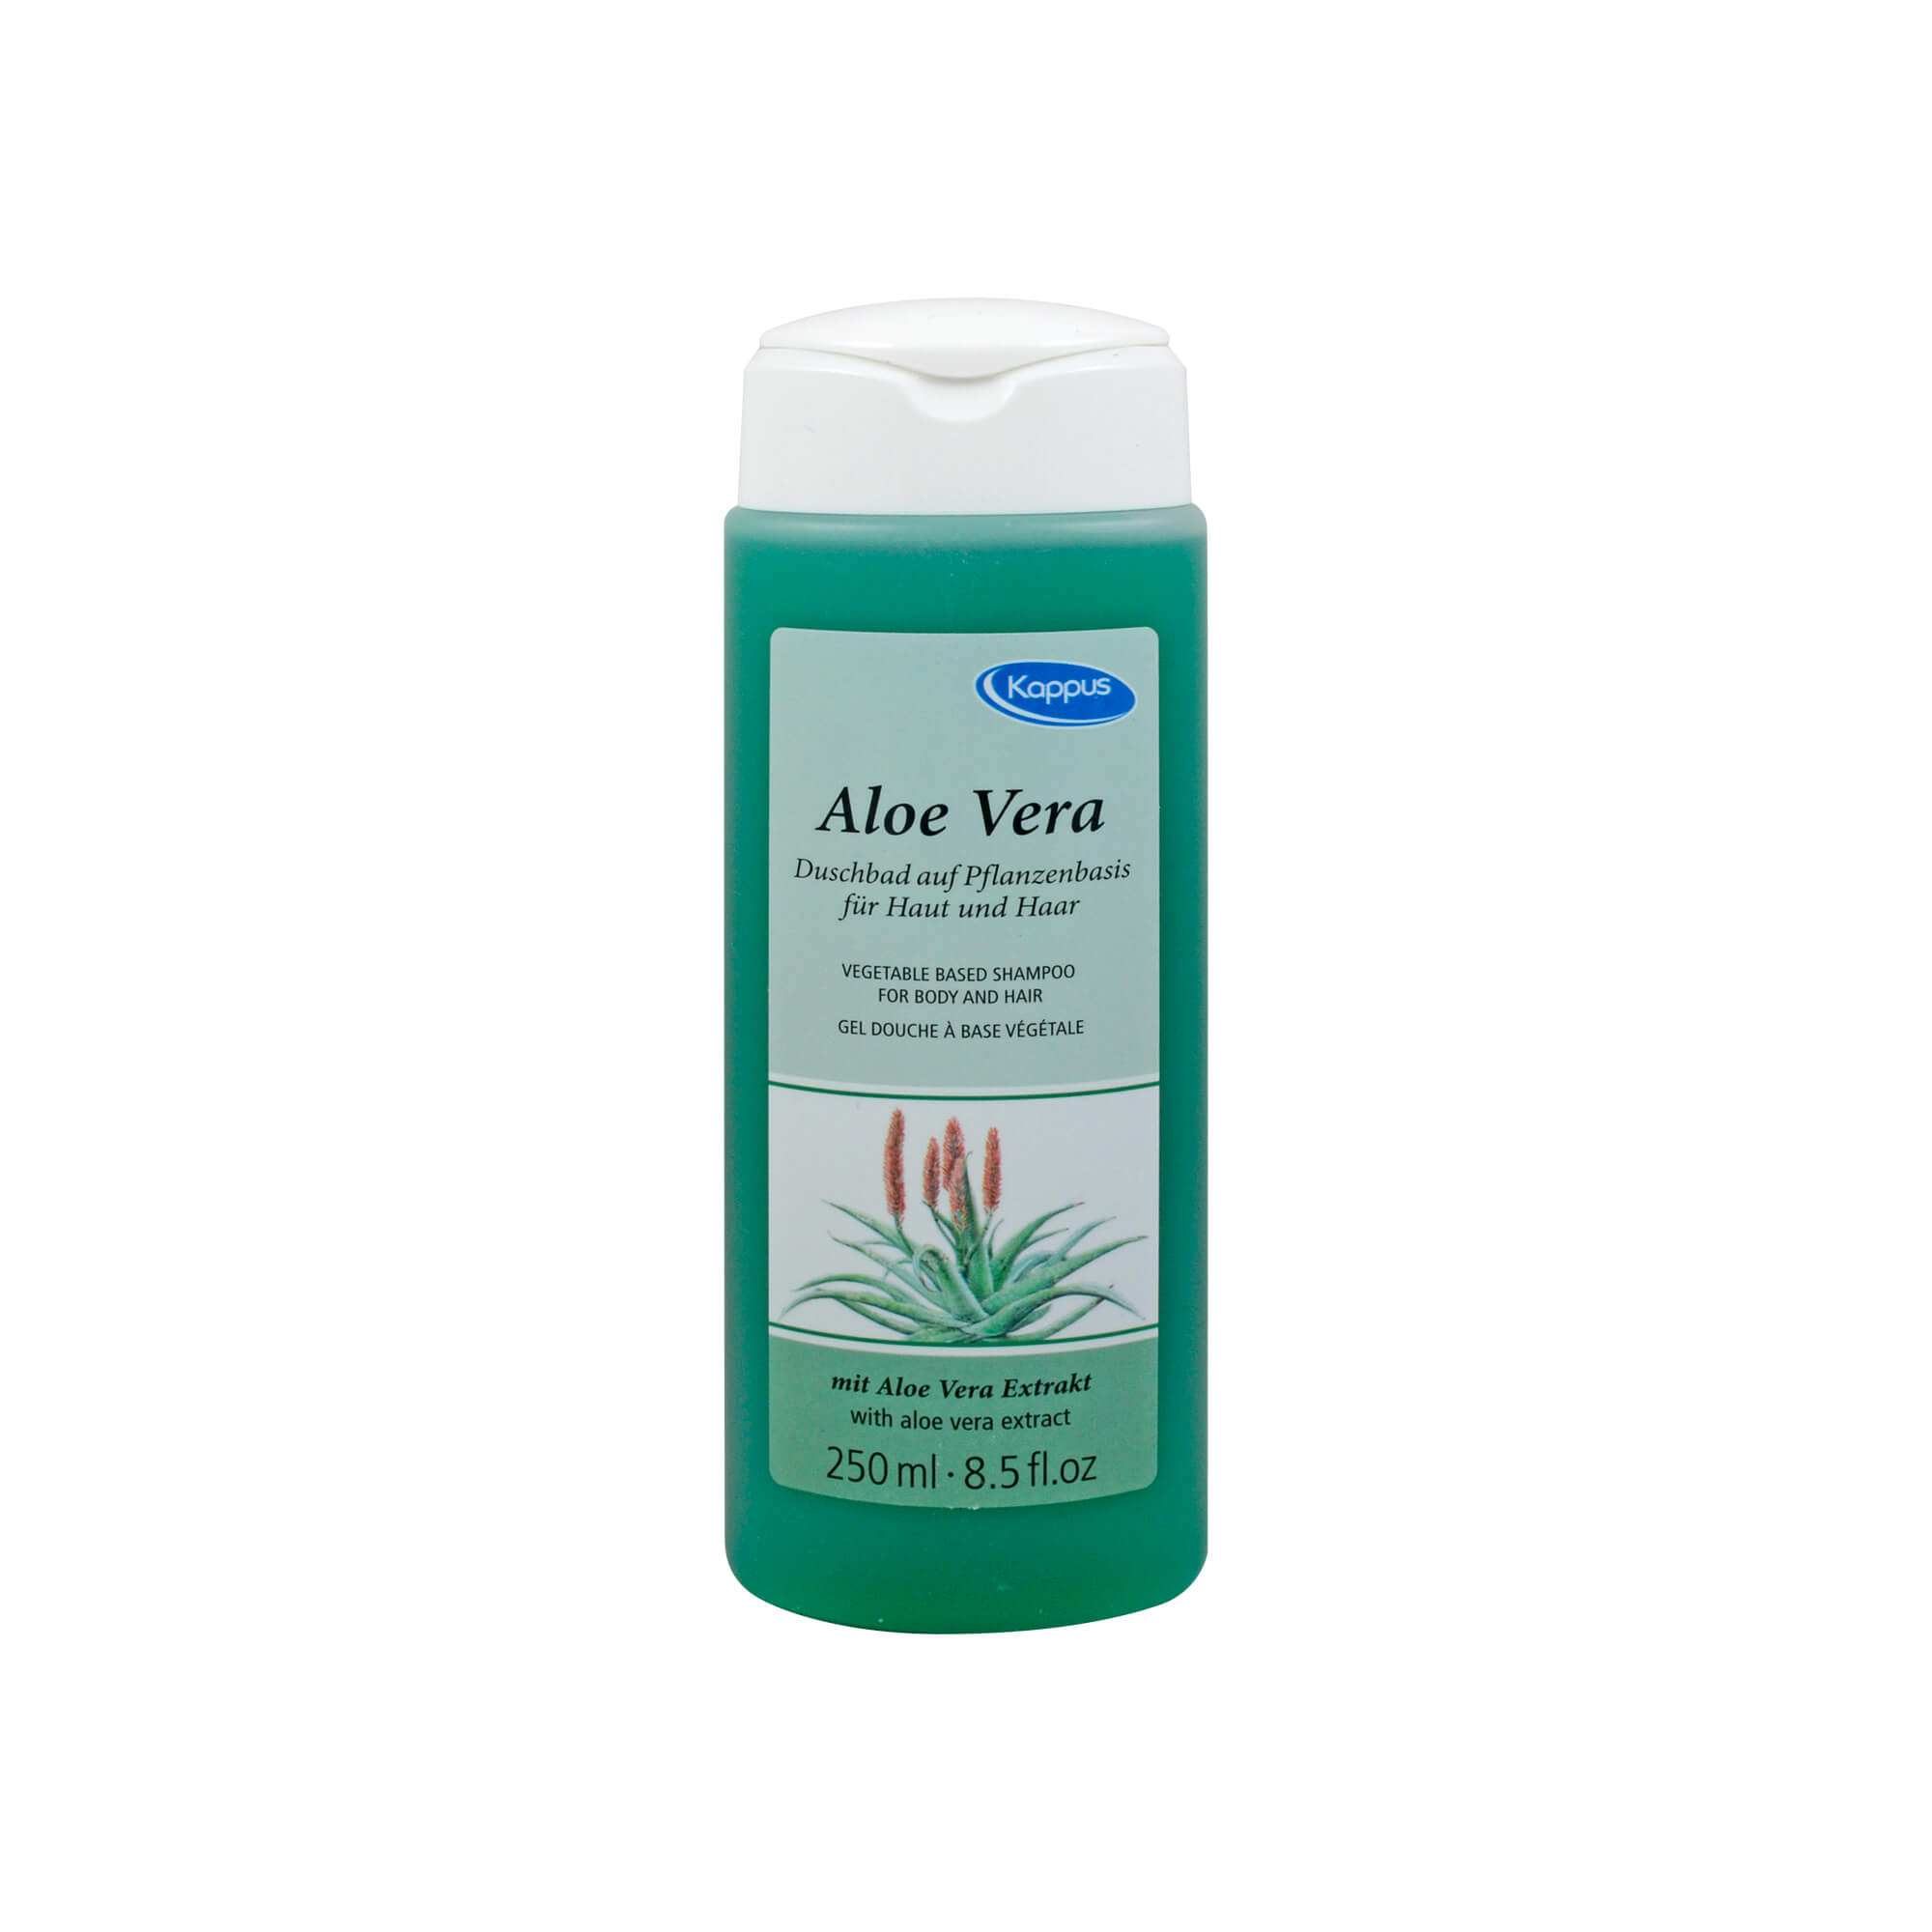 Mit dem Aloe Vera Duschbad bewahren Sie Körper- und Kopfhaut vor dem Austrocknen und verhindern die Bildung von Hautschuppen.